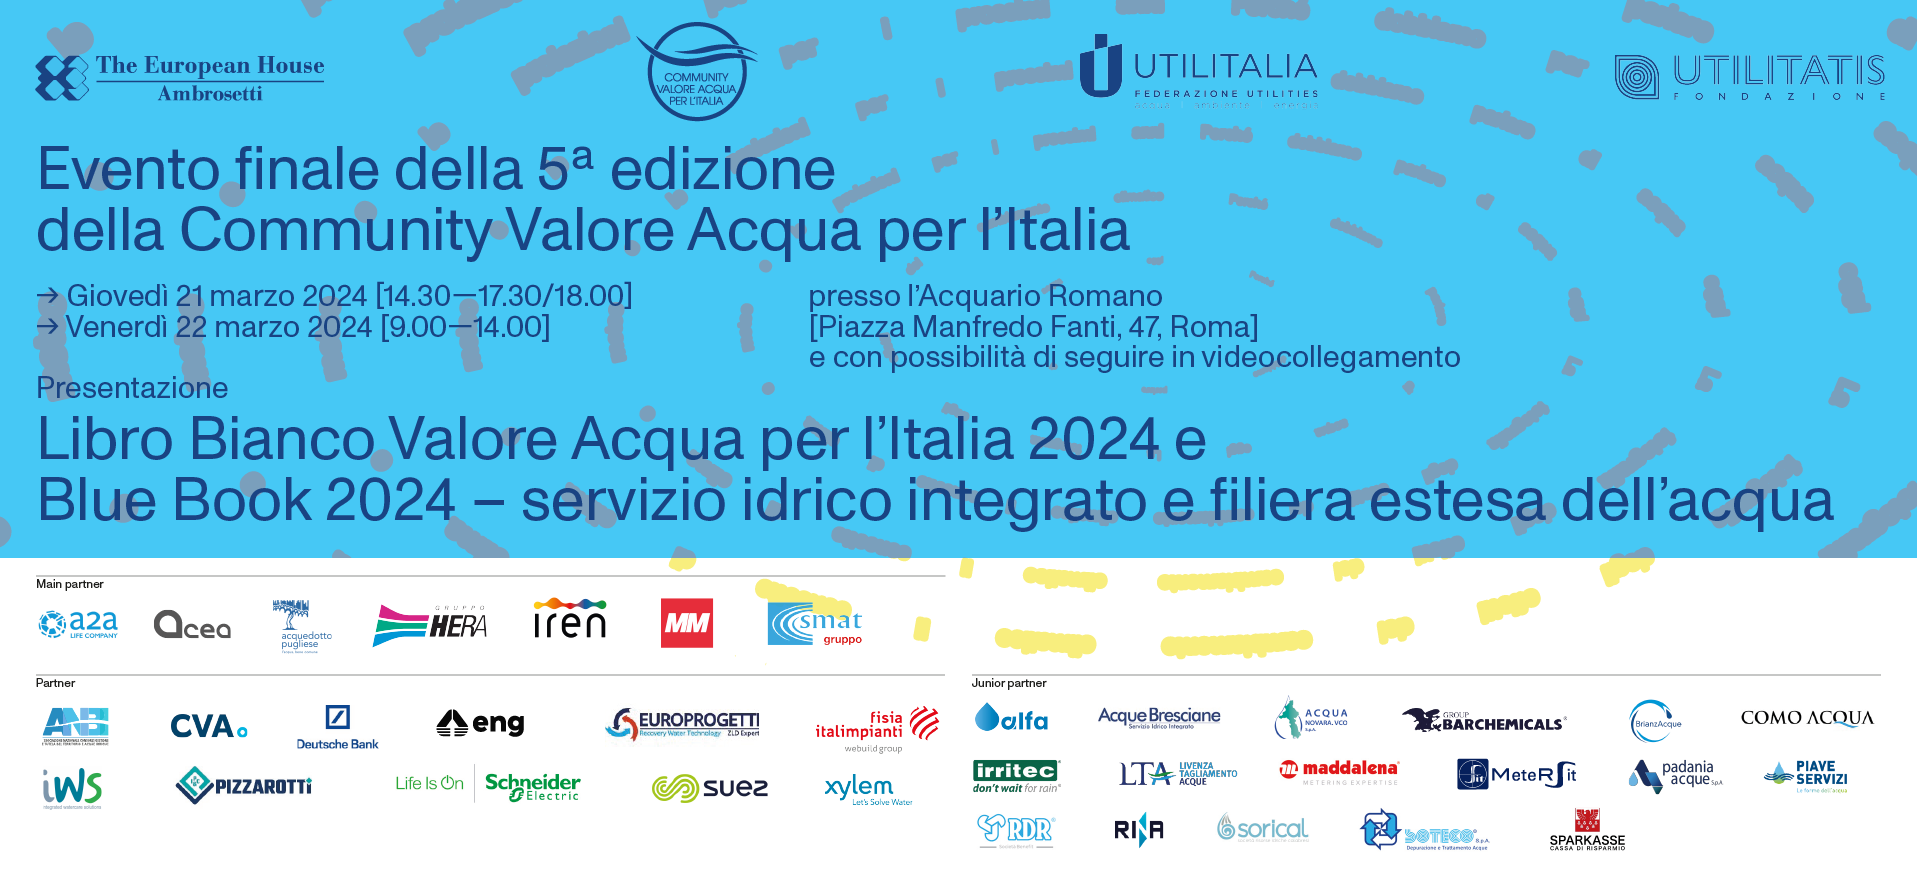 Presentazione del Libro Bianco Valore Acqua per l’Italia 2024 e Blue Book 2024